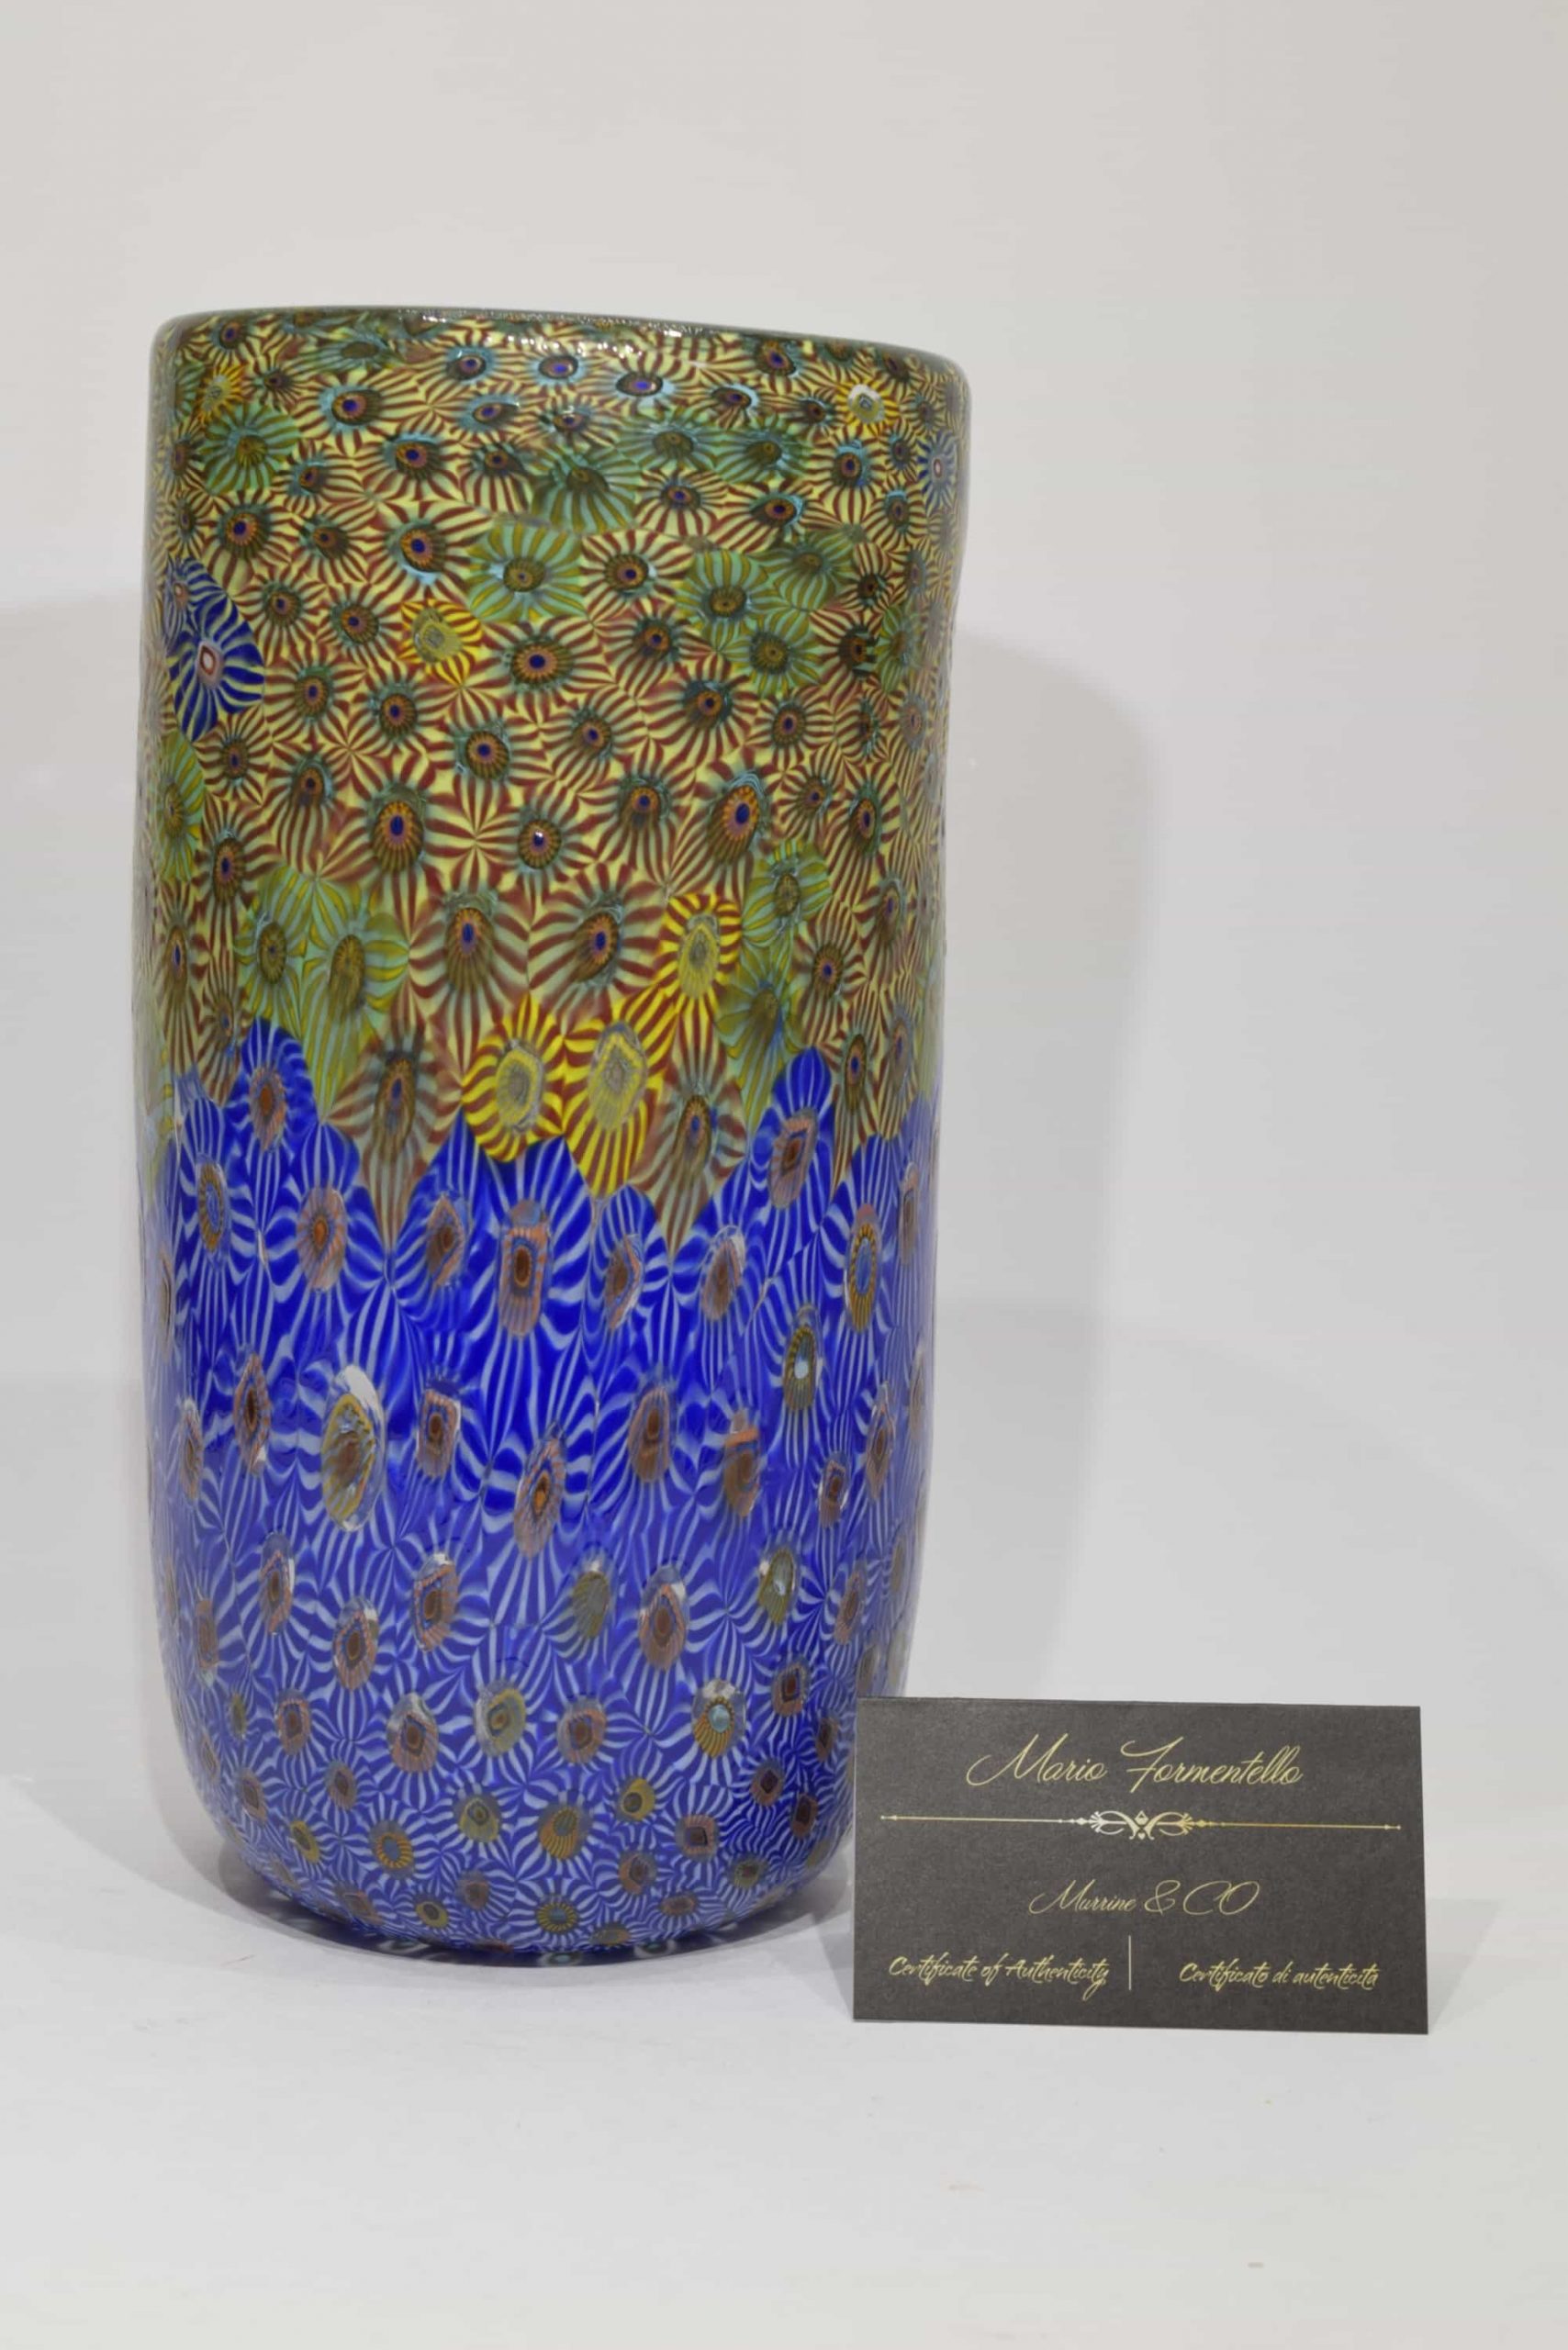 Incalmo Murrine Vase In Murano Glass